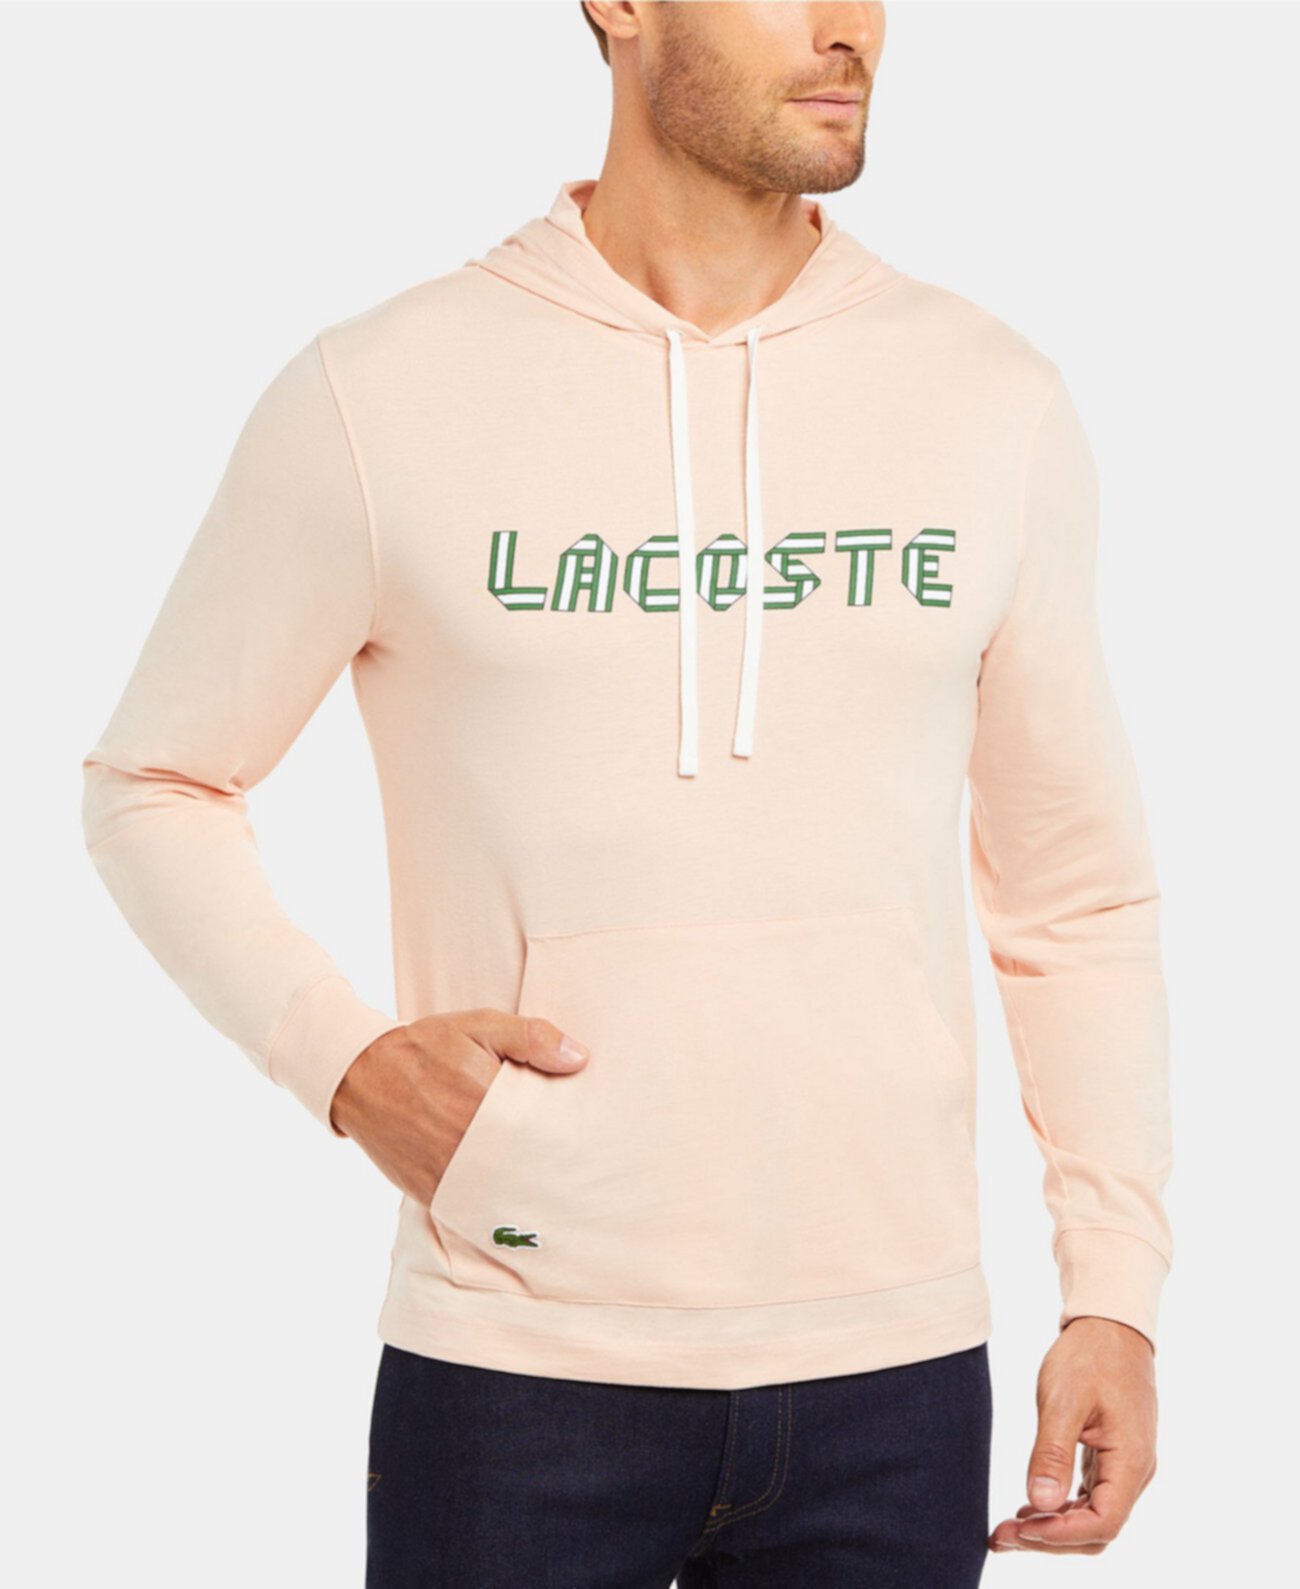 Мужская футболка с длинным рукавом и длинными рукавами с надписью Lacoste Heritage Lacoste